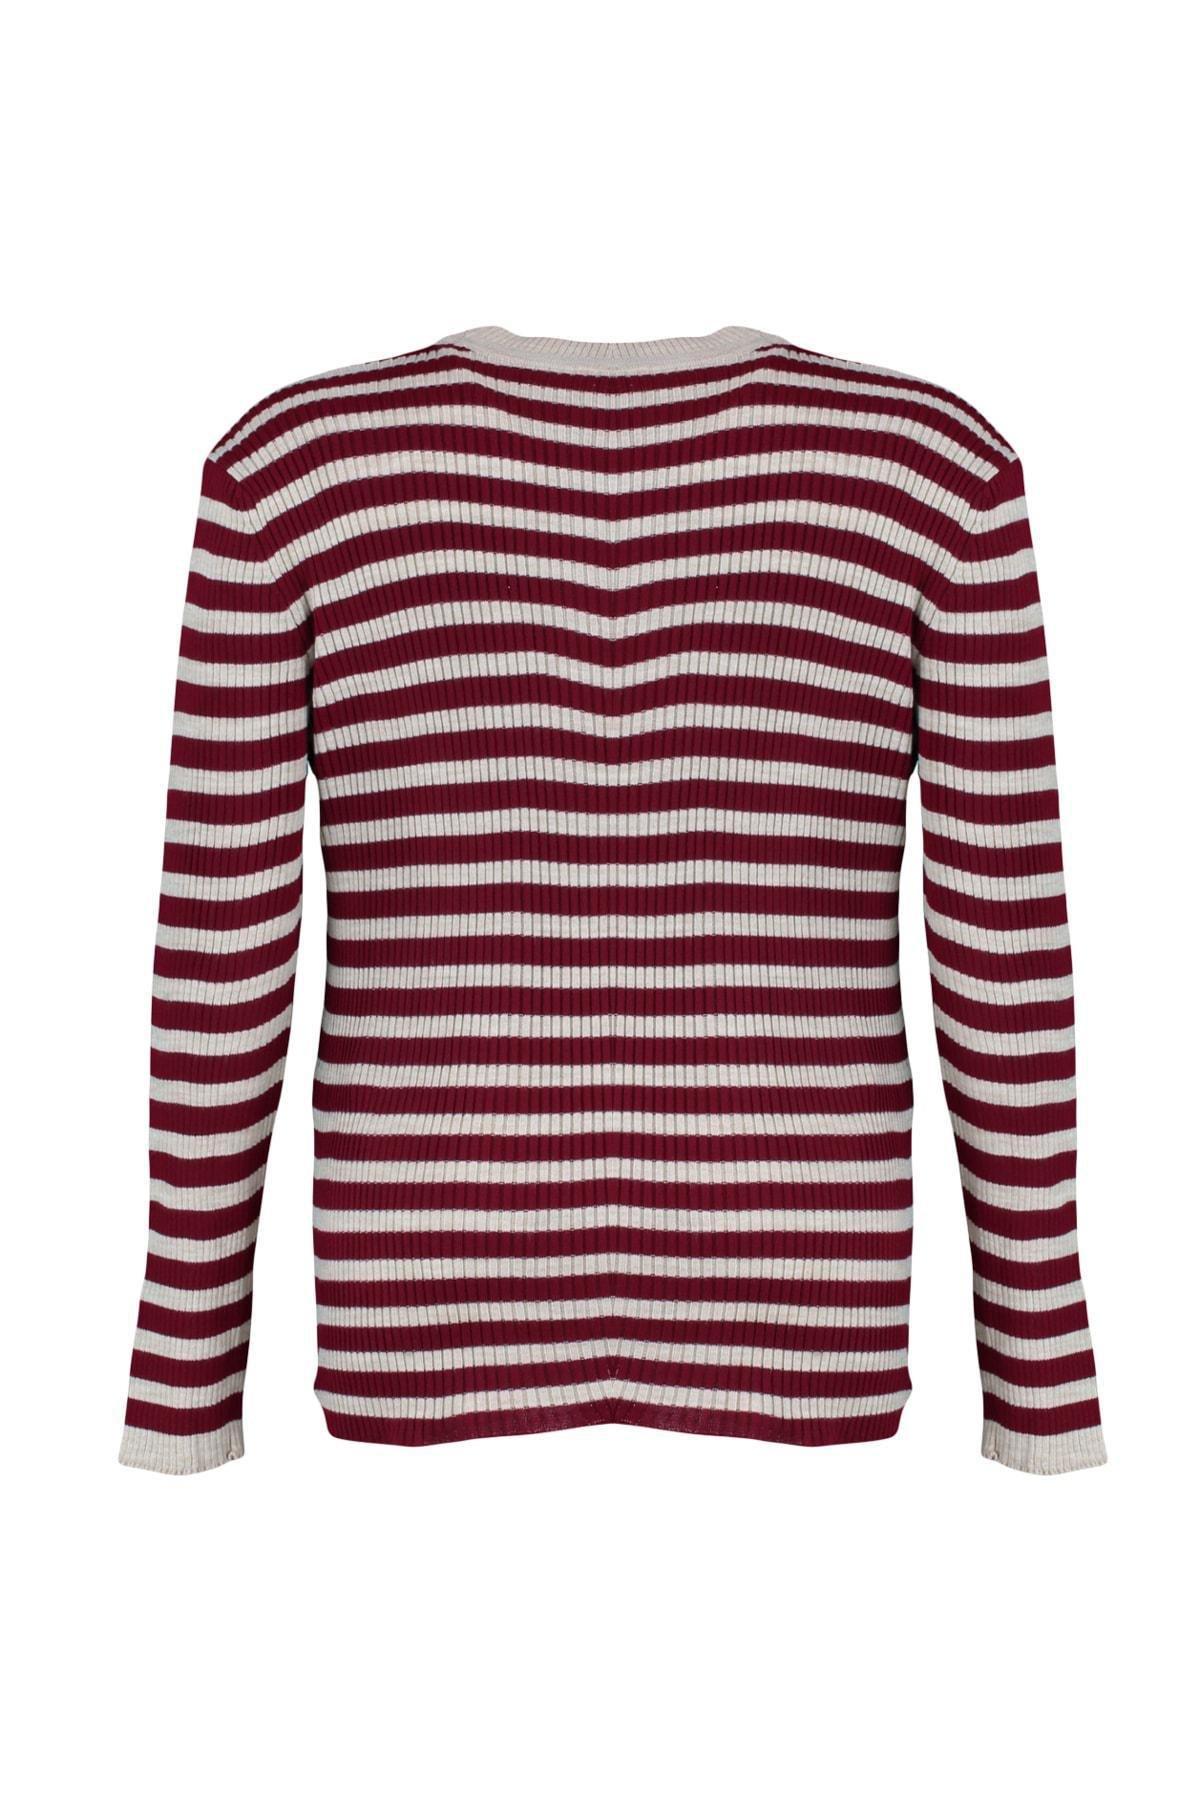 Trendyol - Burgundy Striped Plus Size Sweater